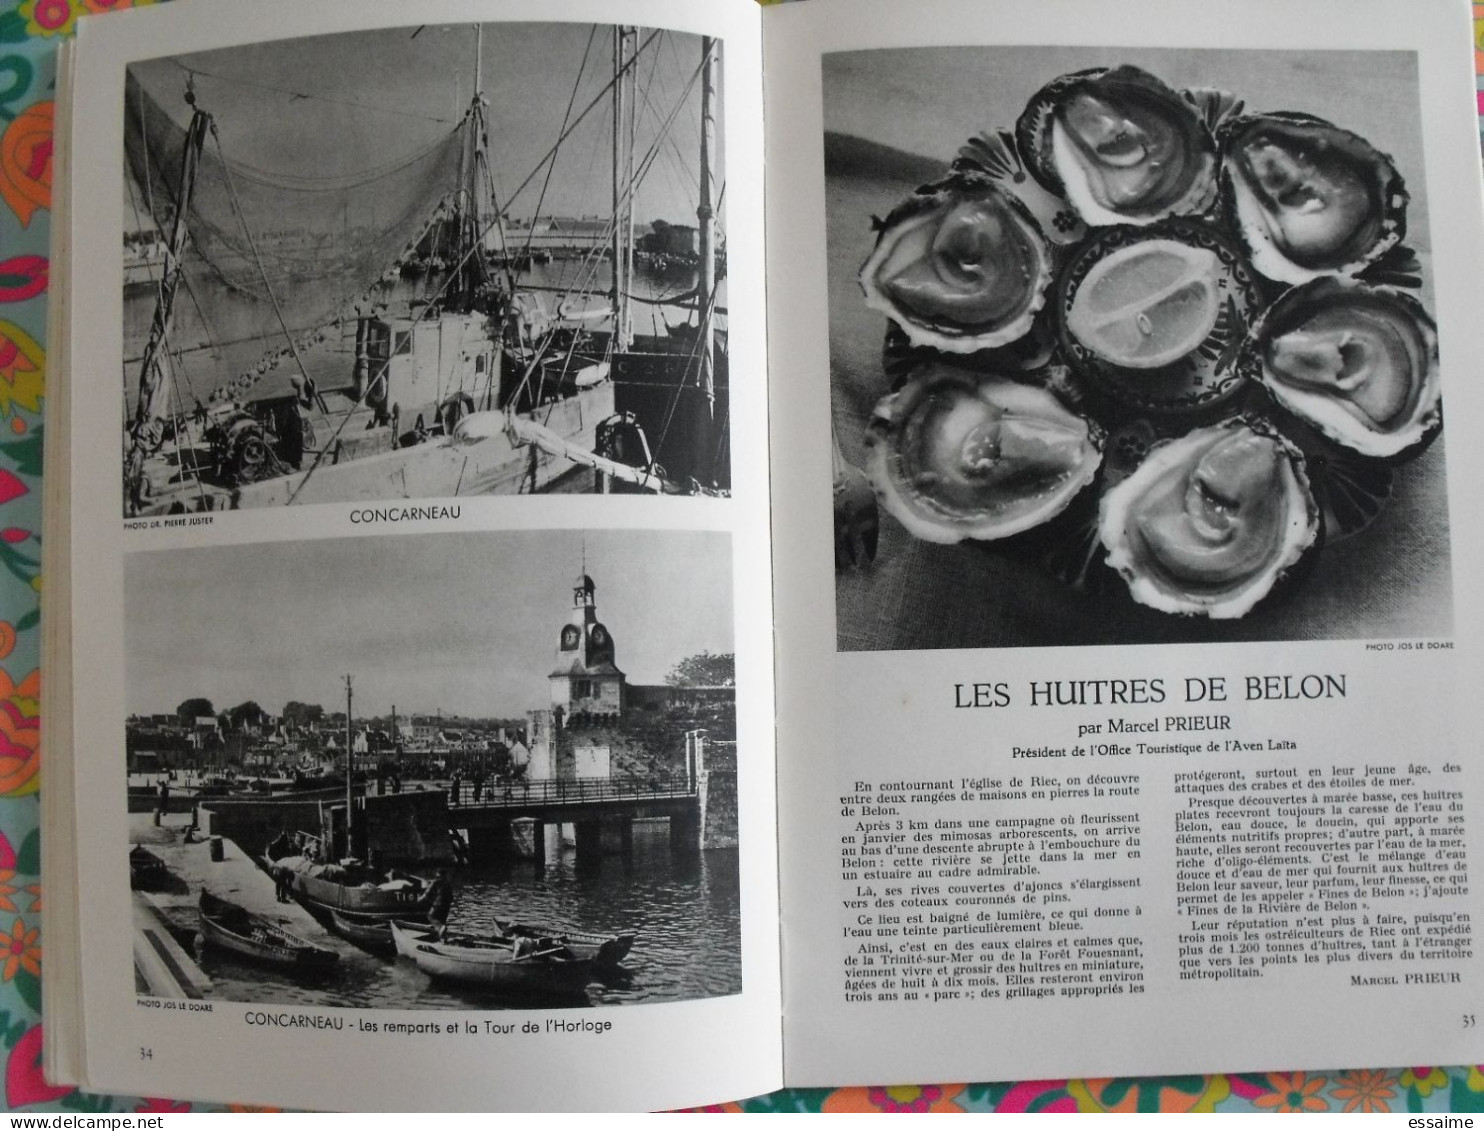 La France à table n° 84. 1960. Finistère. Bretagne raz audierne Brest morlaix chateaulin quimper crozon . gastronomie